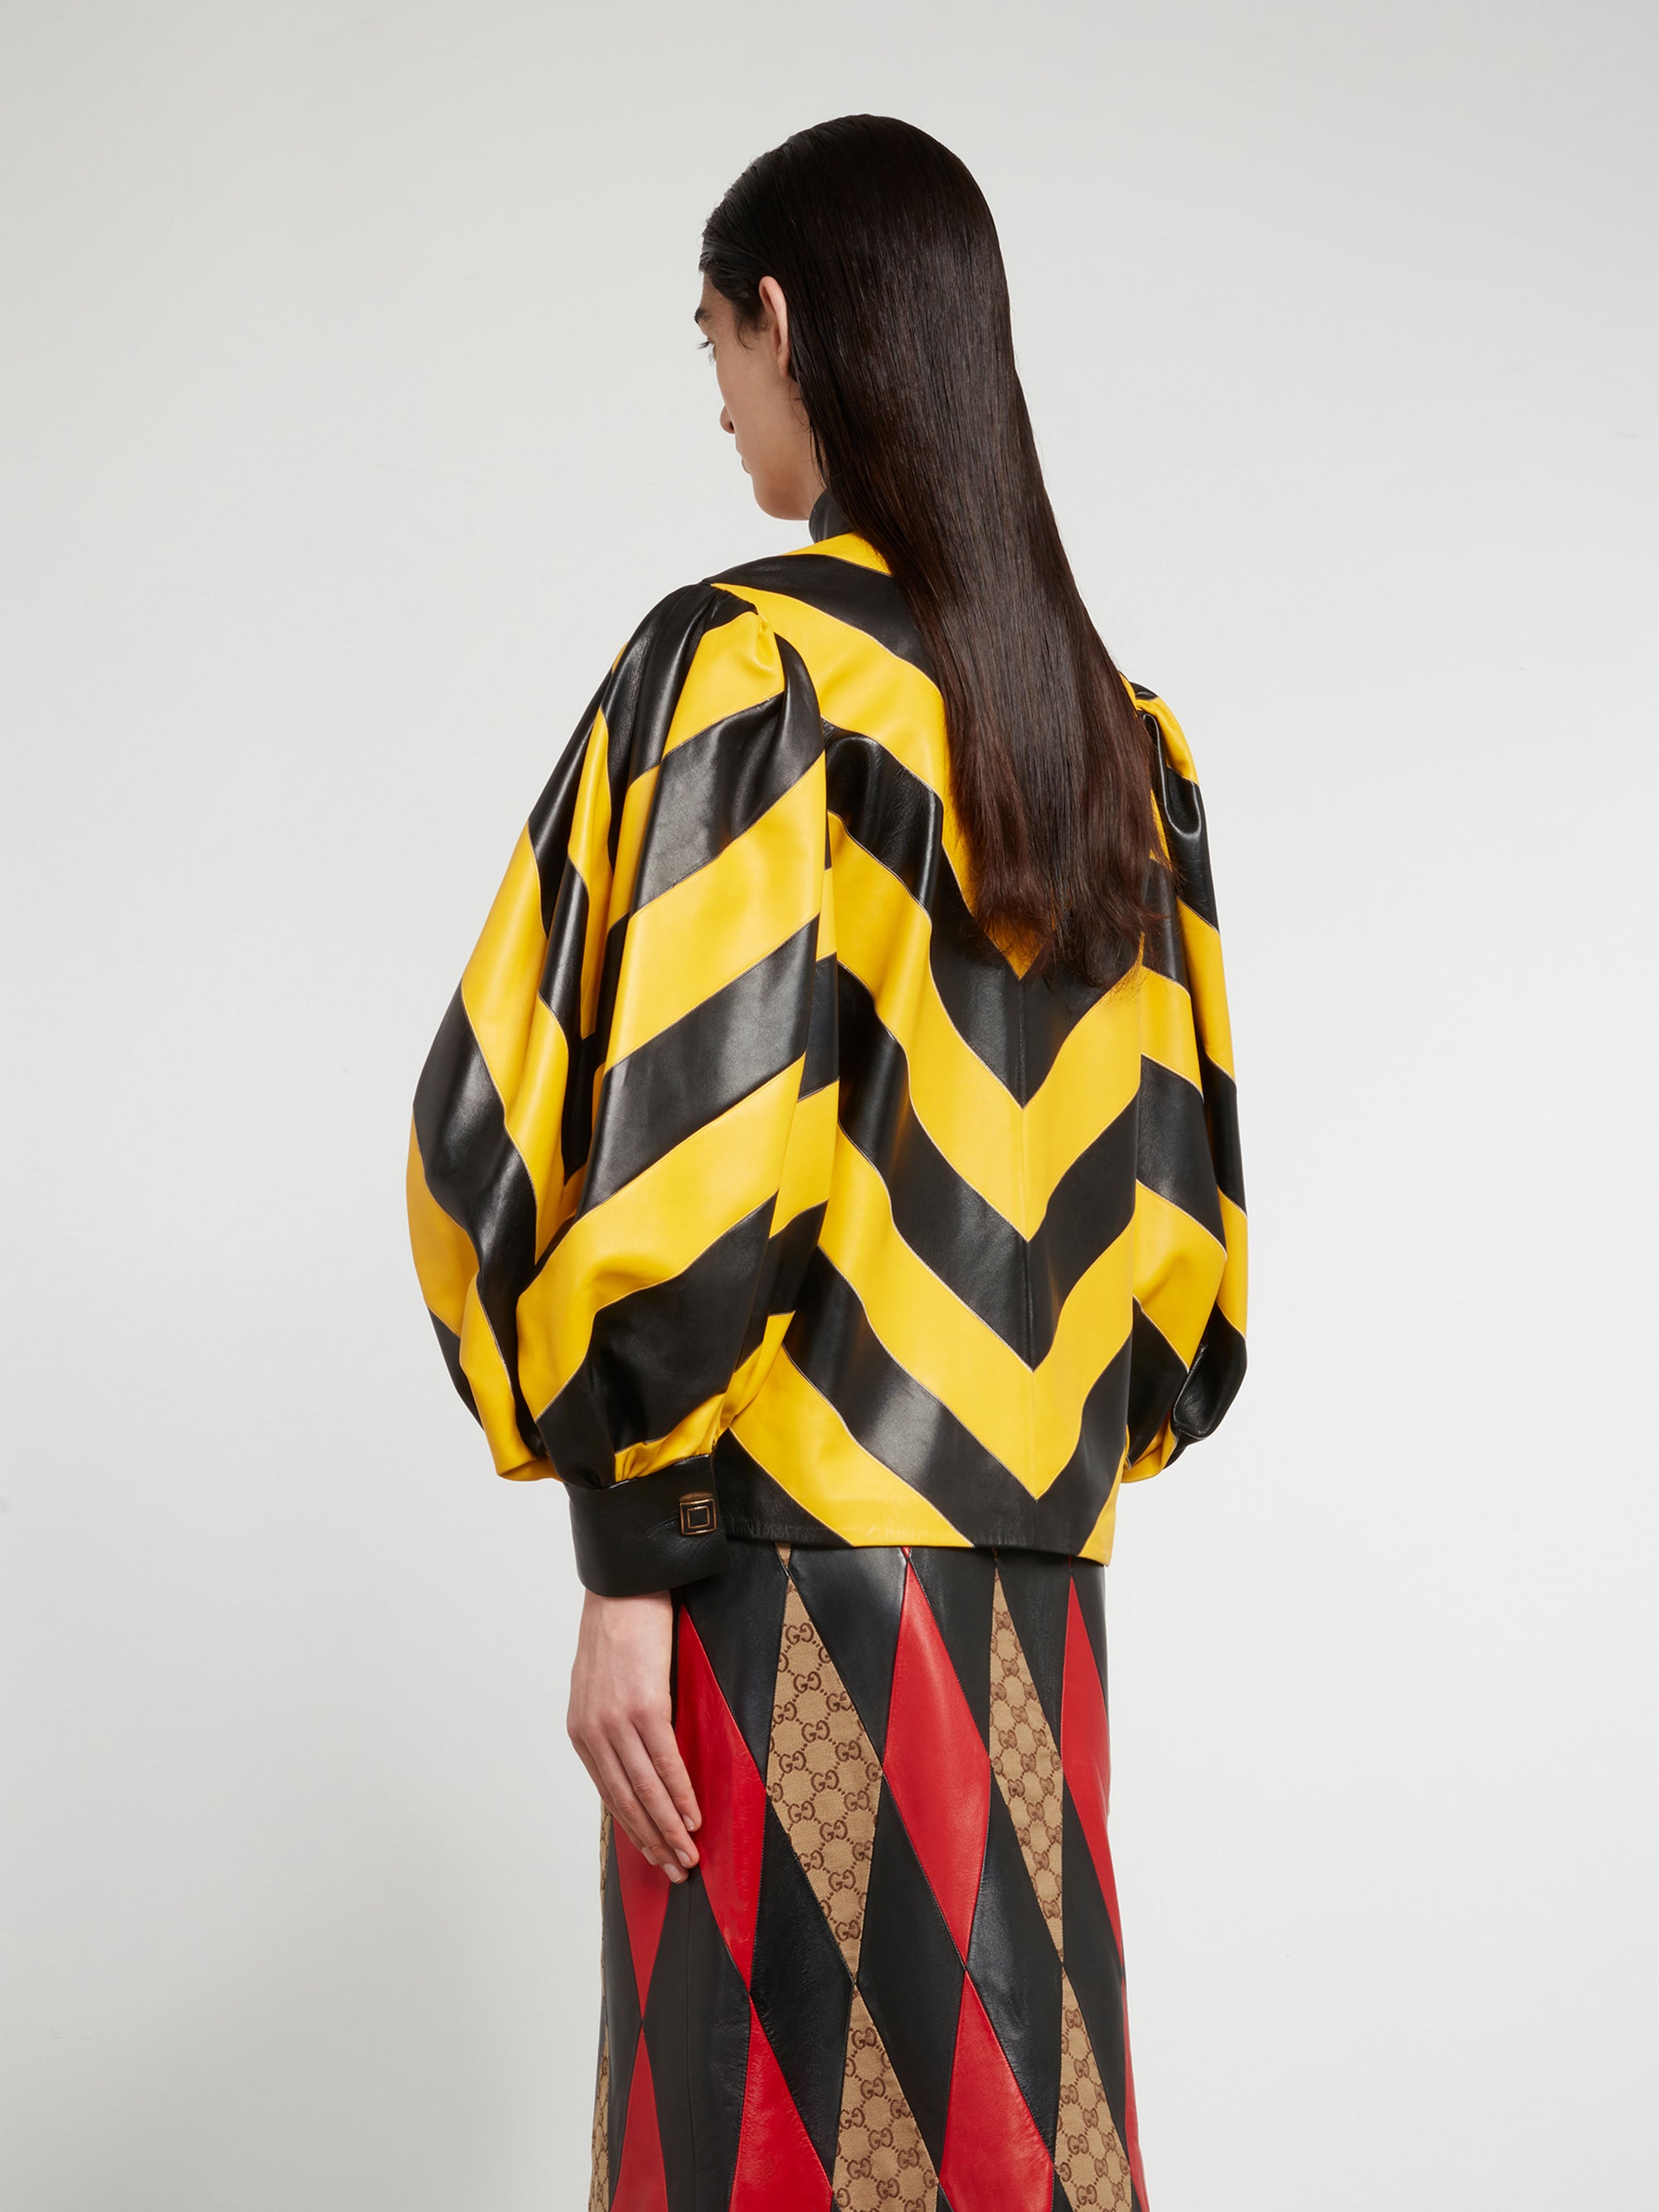 Gucci - Women’s DSM Exclusive Intarisa Leather Zip Jacket - (Black/Yellow) view 3